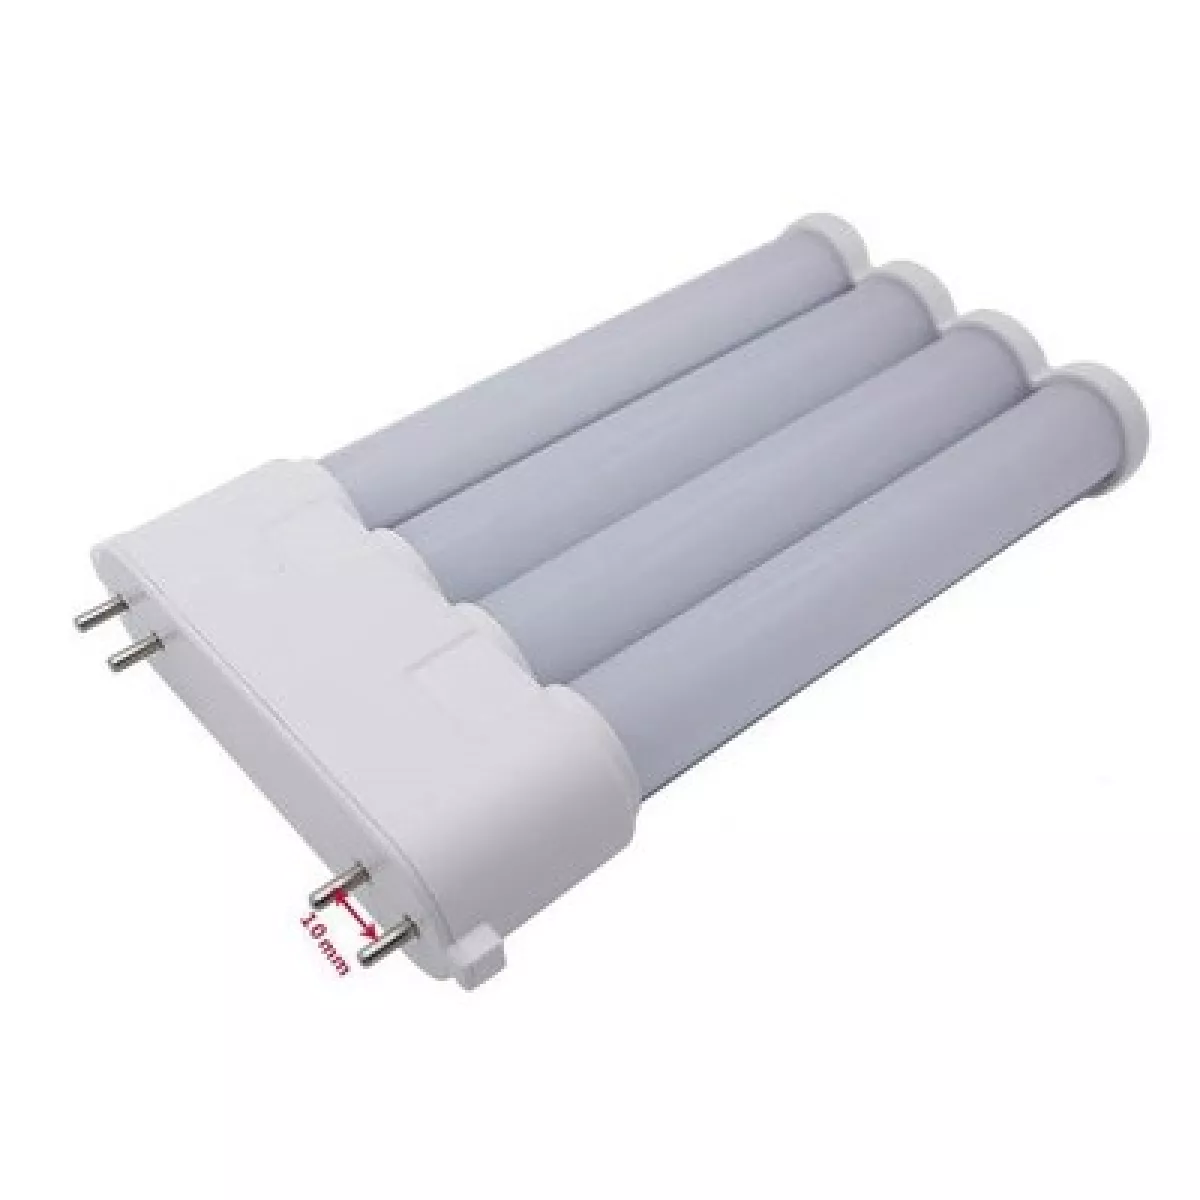 #2 - LEDlife 2G10-SMART16 HF - Direkte erstatning, LED lysstofrør, 12W, 16,5cm, 2G10 - Dæmpbar : Ikke dæmpbar, Kulør : Varm